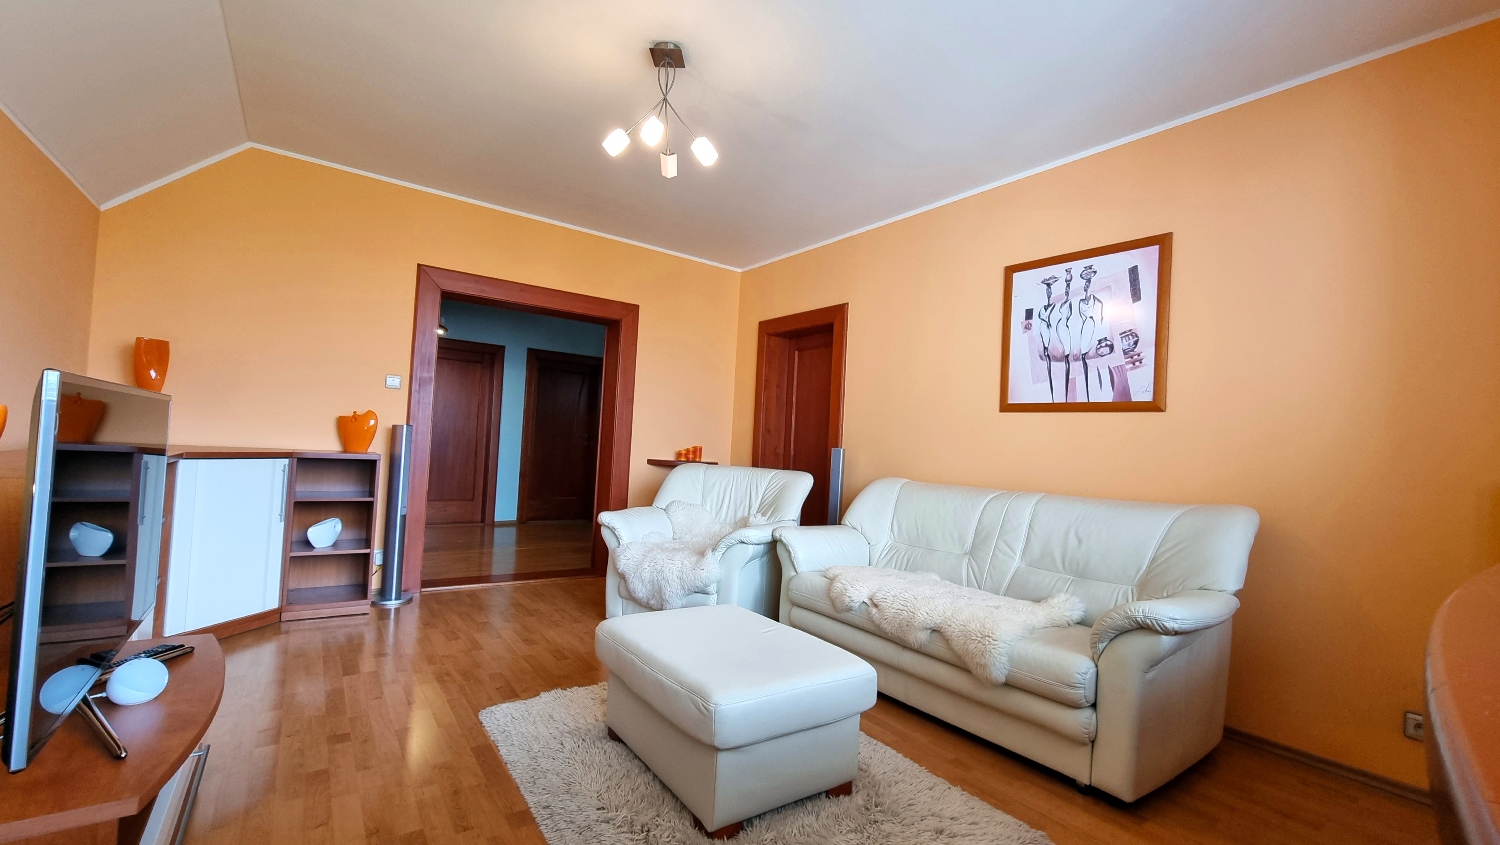 Nadštandardný 5-izbový byt s loggiou a šatníkom, zrekonštruovaný, výborná lokalita, predaj, Žilina - Solinky, Cena: 220.000 €